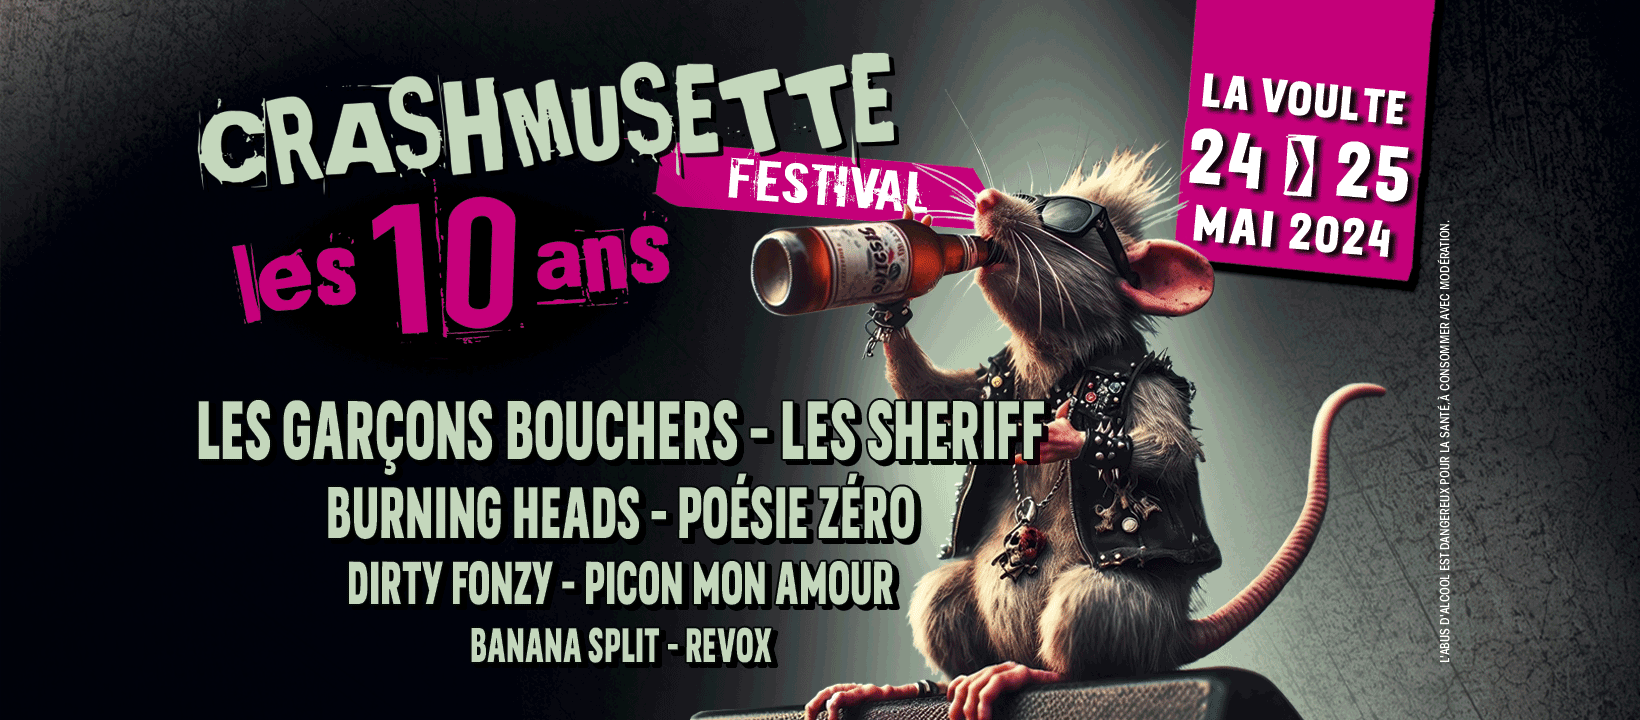 Festival de musique actuelle "Crashmusette" - Soirée-concert... Le 24 mai 2024